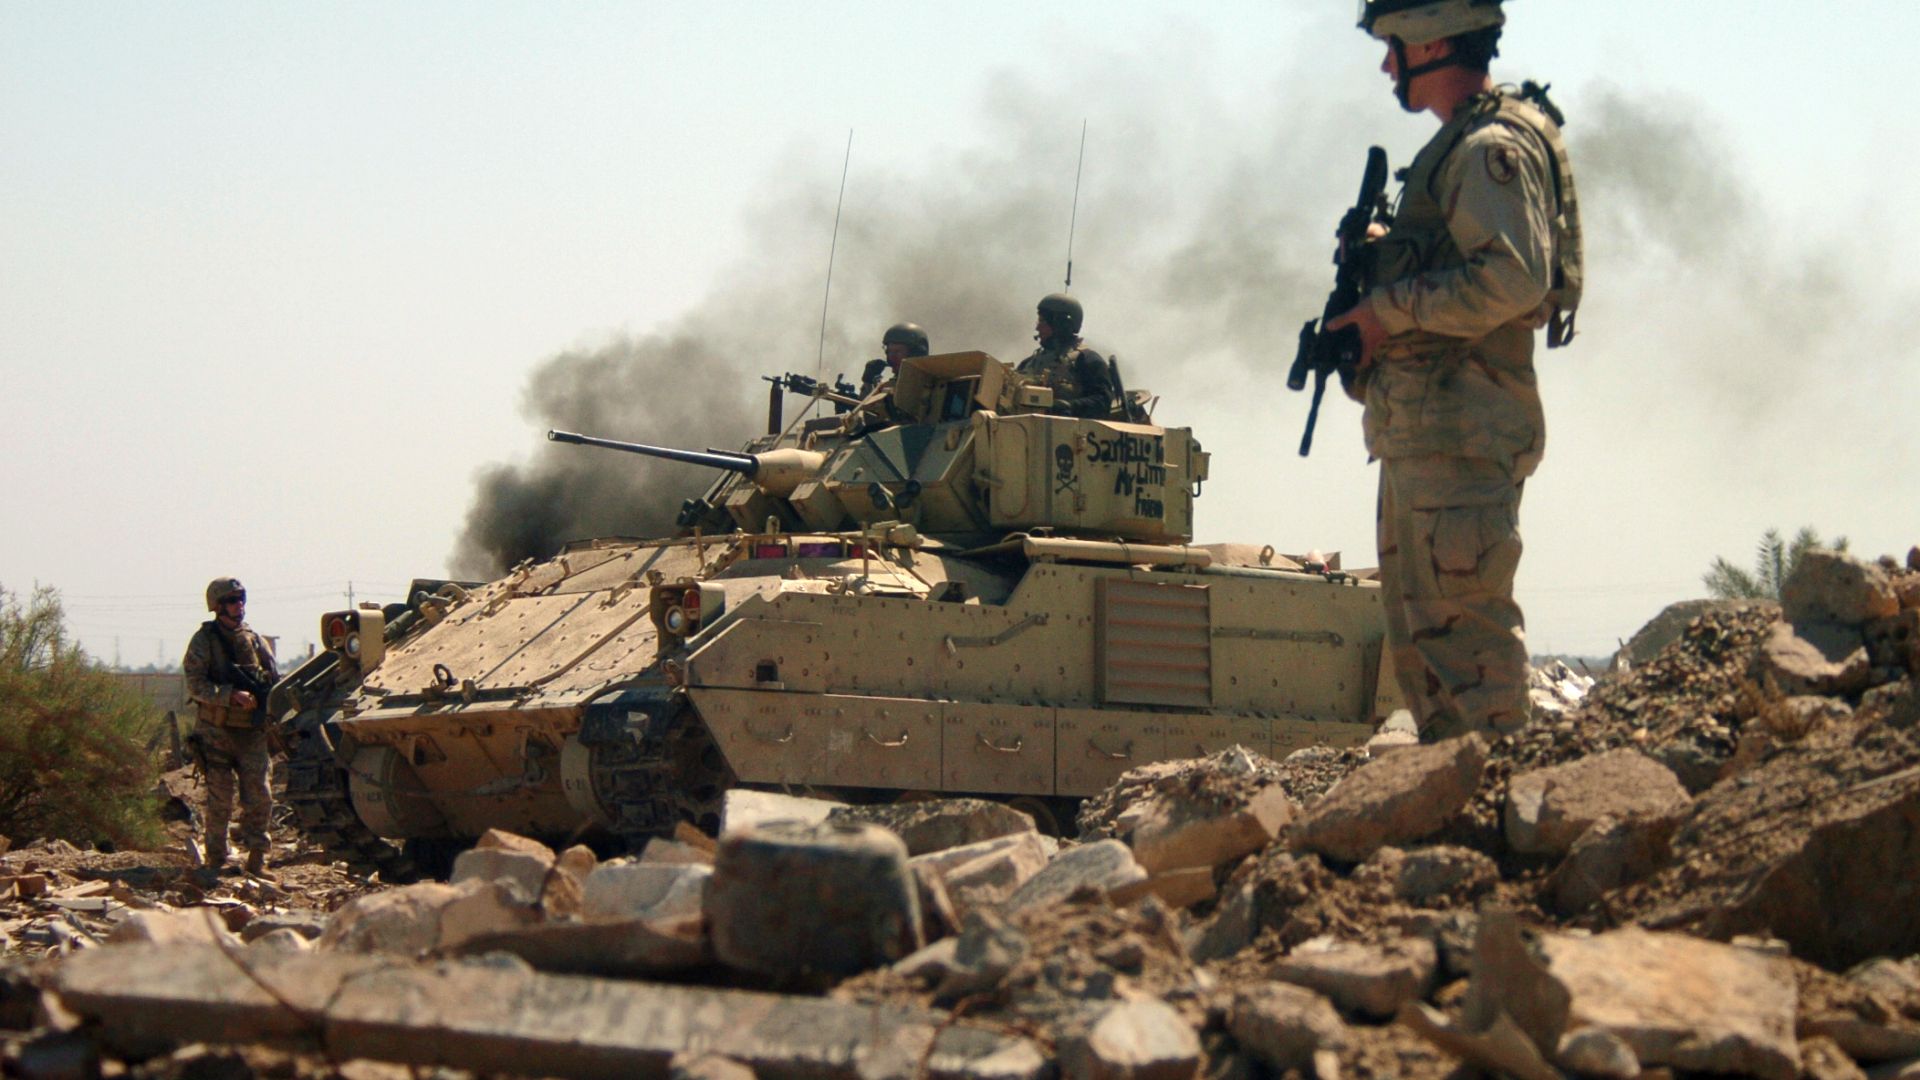 М3А2 Бредли, Боевая машина, Армия США, Ирак, M3A2 Bradley, fighting vehicle, Iraq, U.S. Army (horizontal)